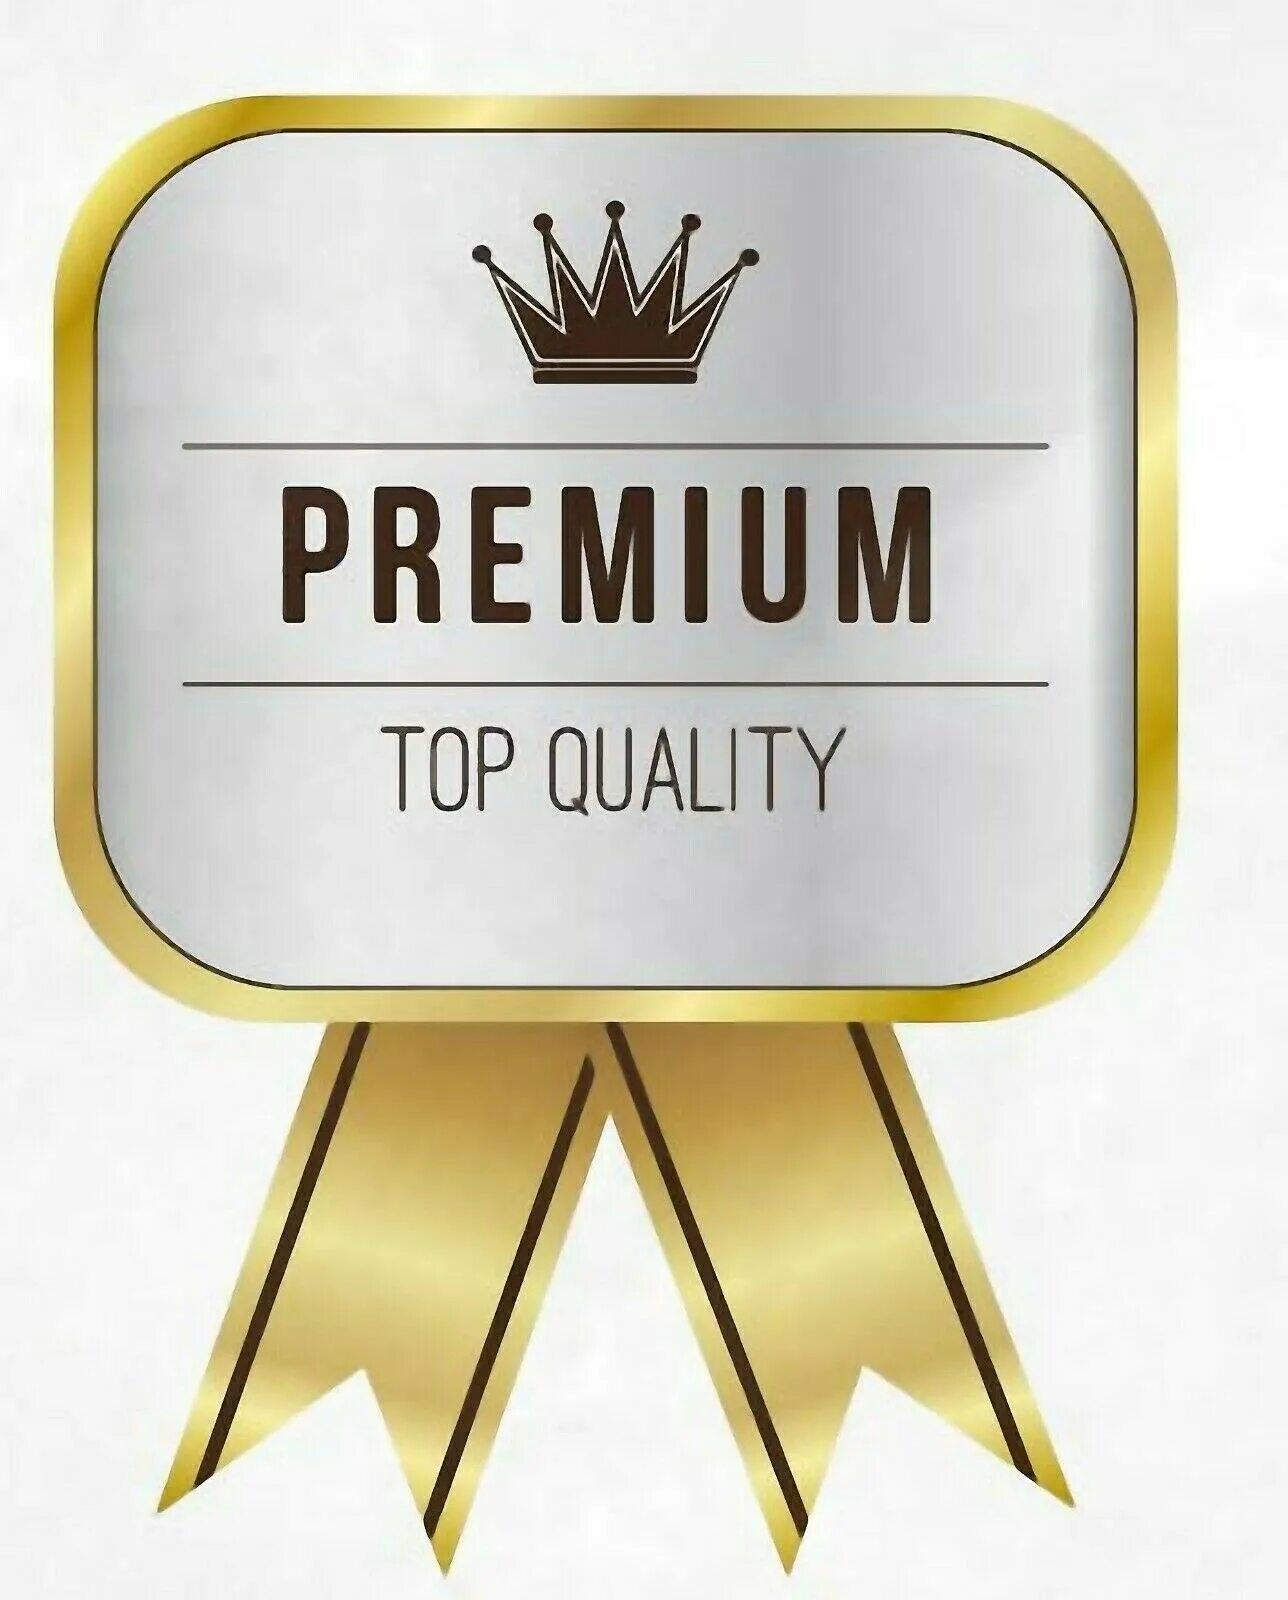 Premium icons. Значок премиум. Значок Premium quality. Премиальное качество. Премиум качество.